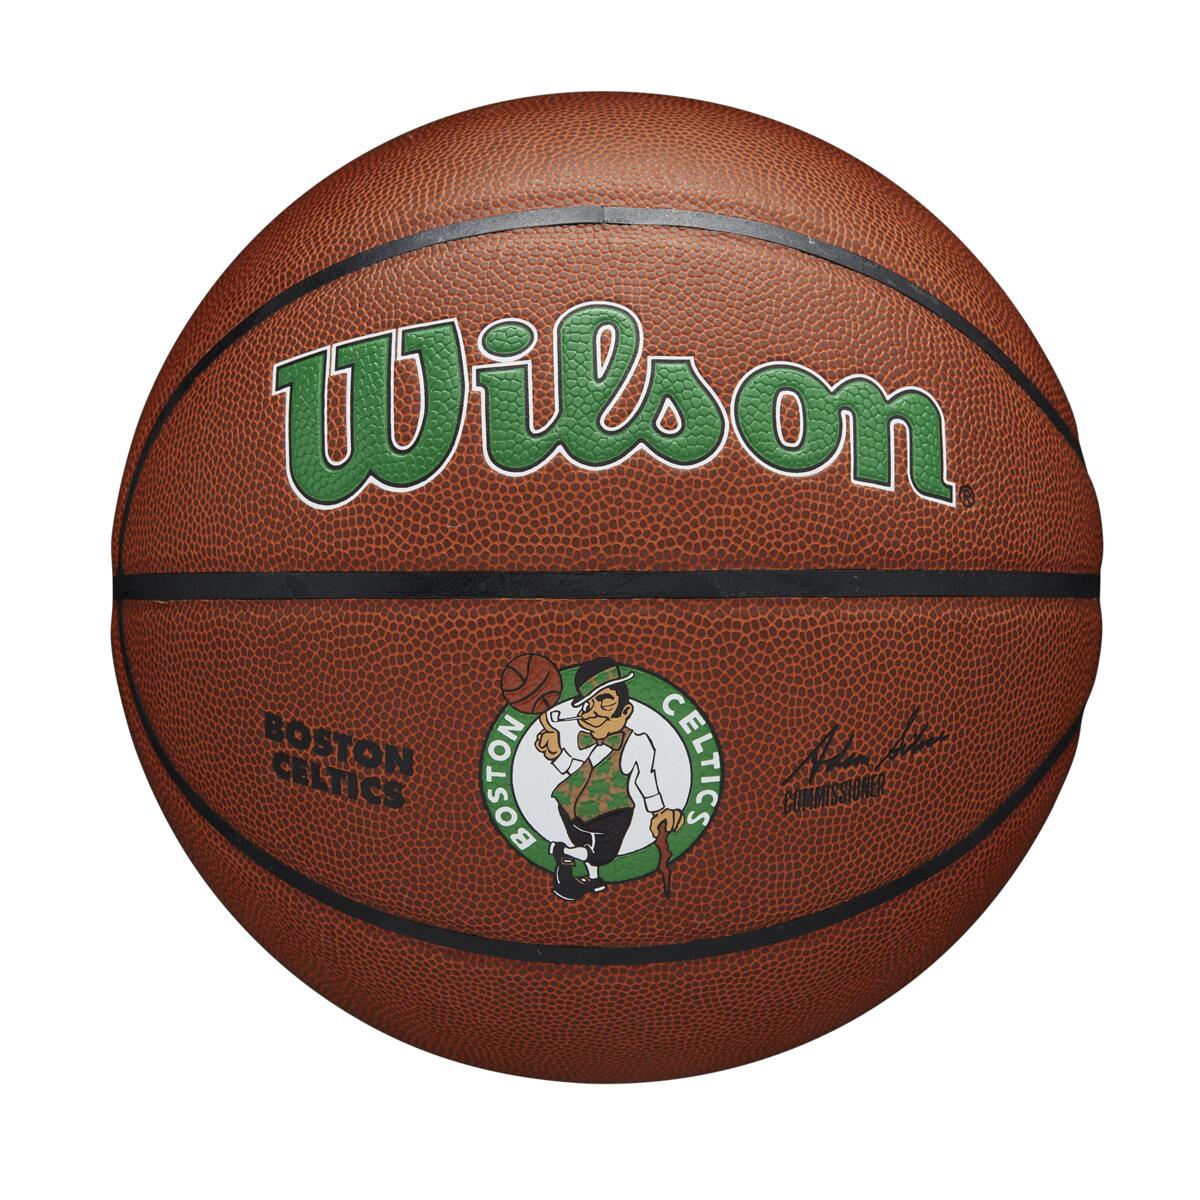 Bola de Basquete NBA Team Alliance - Boston Celtics  #7